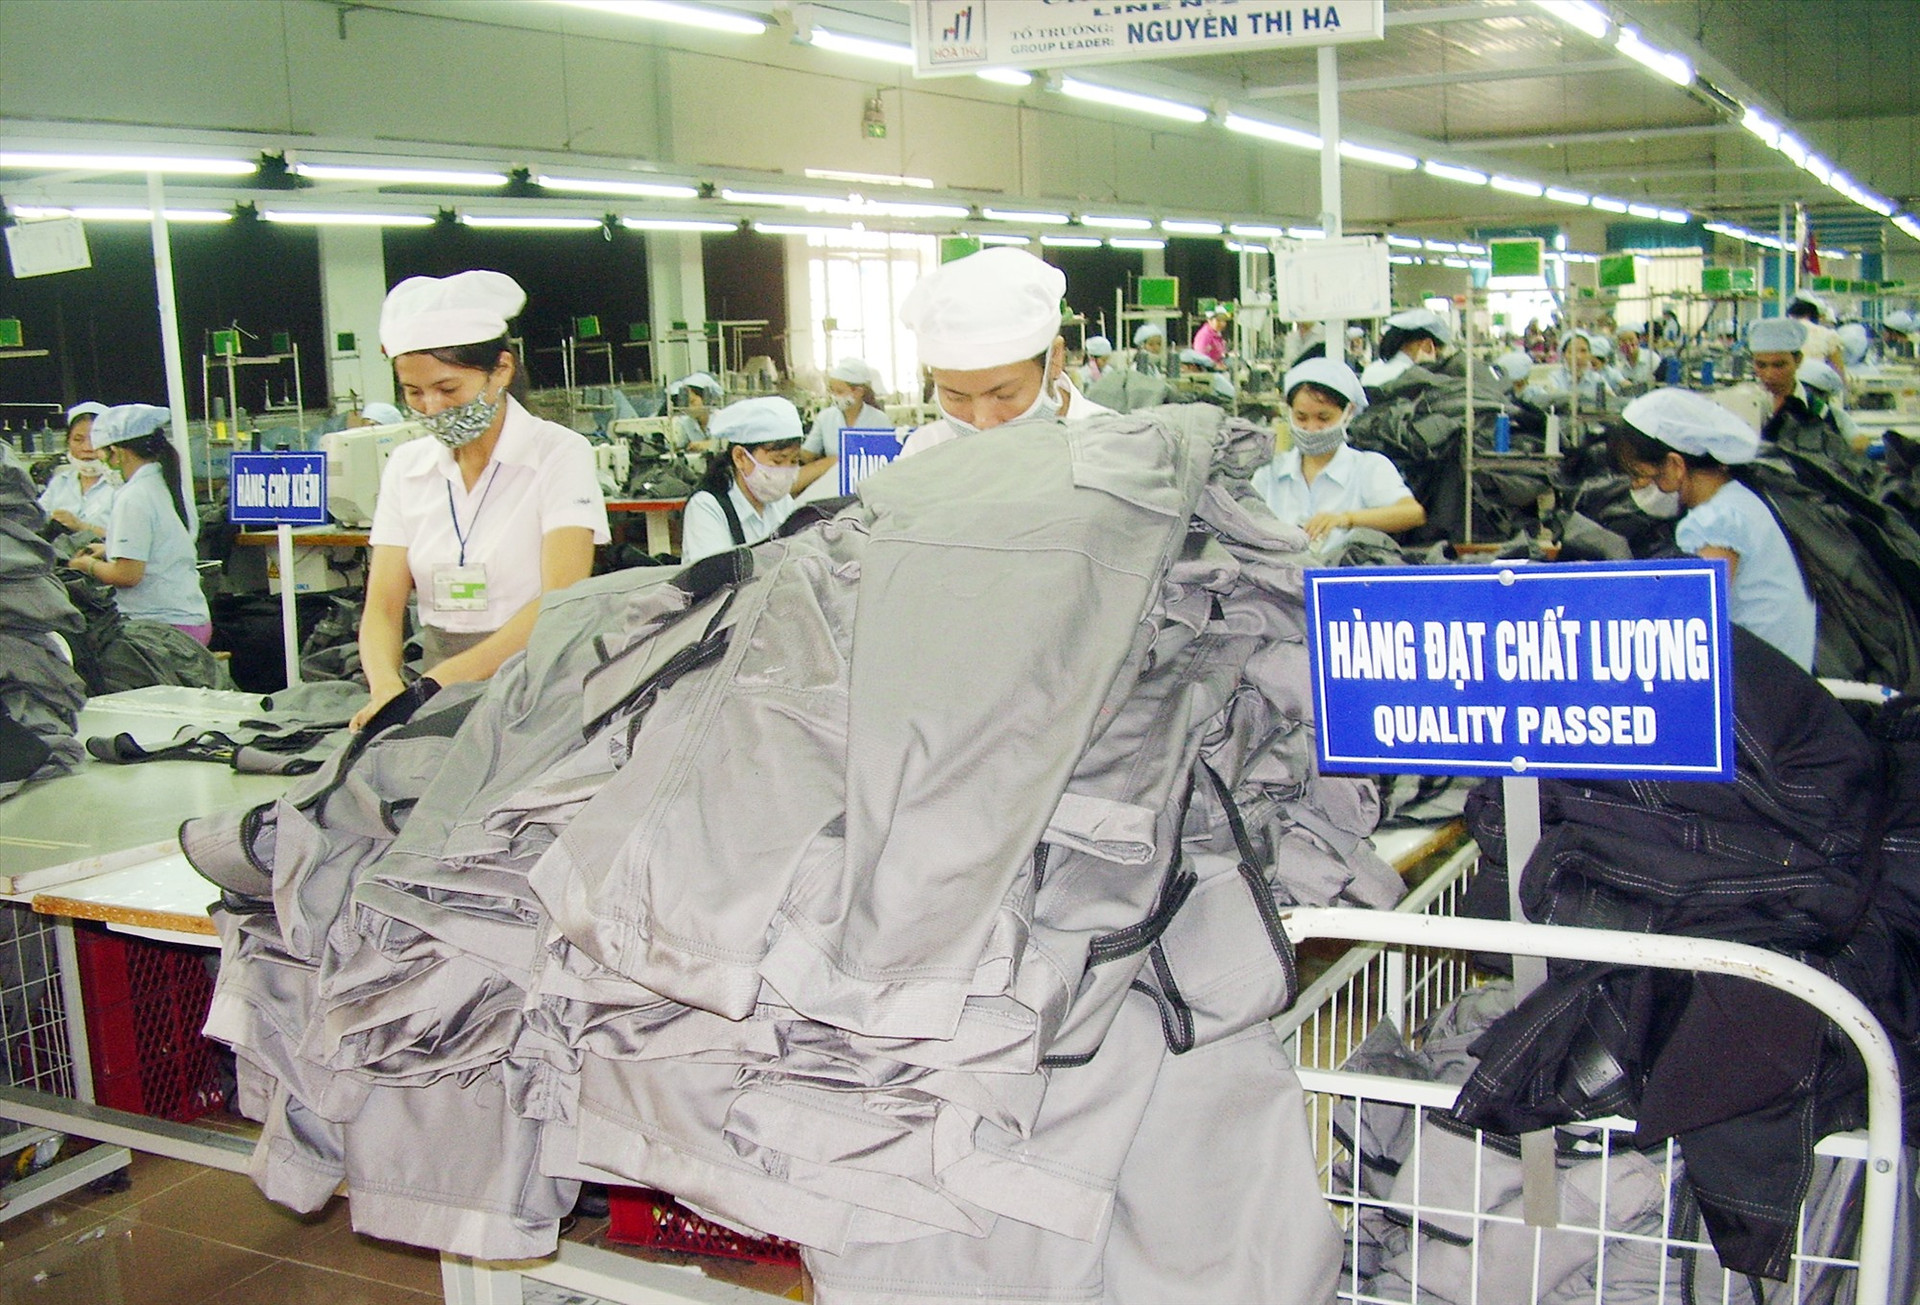 Thời gian đến, Quảng Nam sẽ đẩy mạnh thực hiện các chính sách hỗ trợ DN, cơ sở sản xuất kinh doanh. Ảnh: T.L